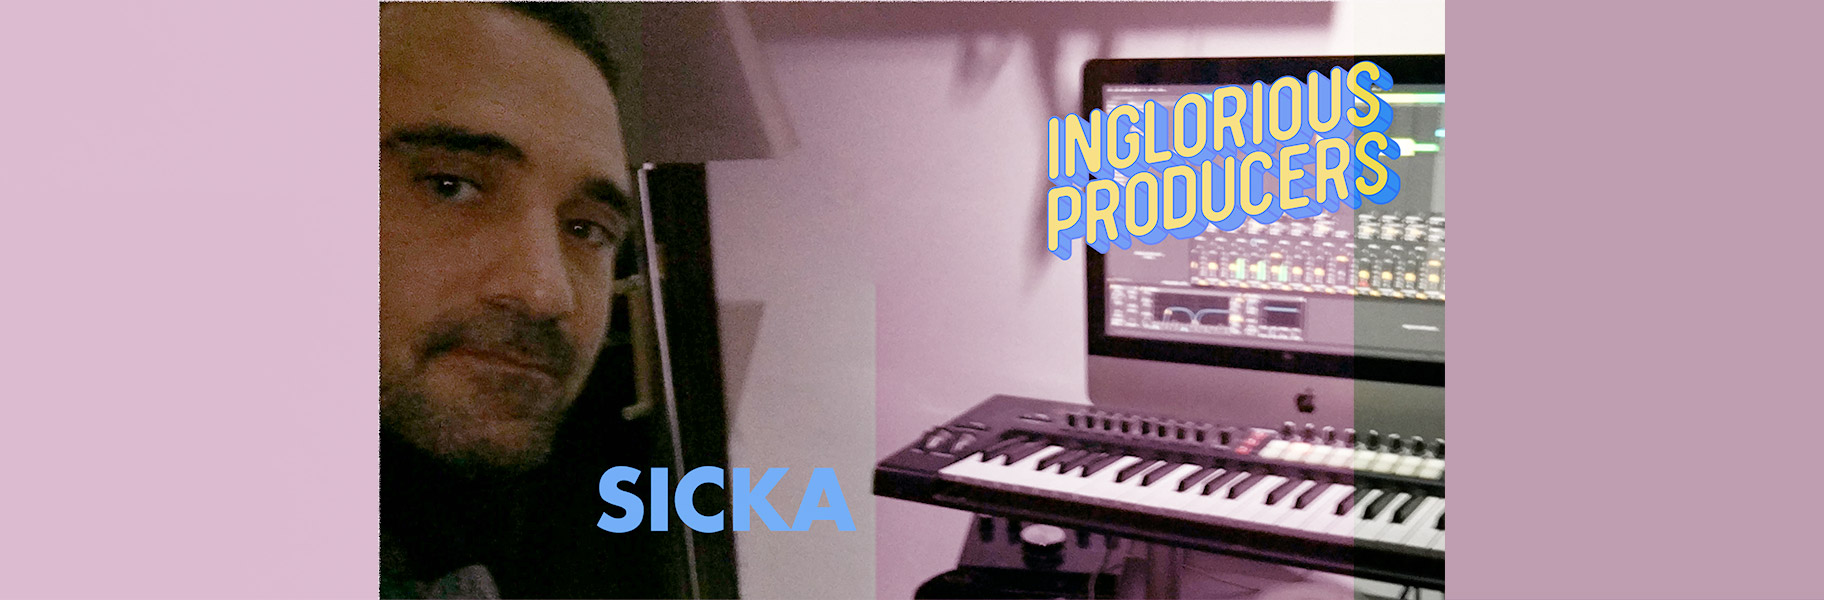 Inglorious producers #Sicka